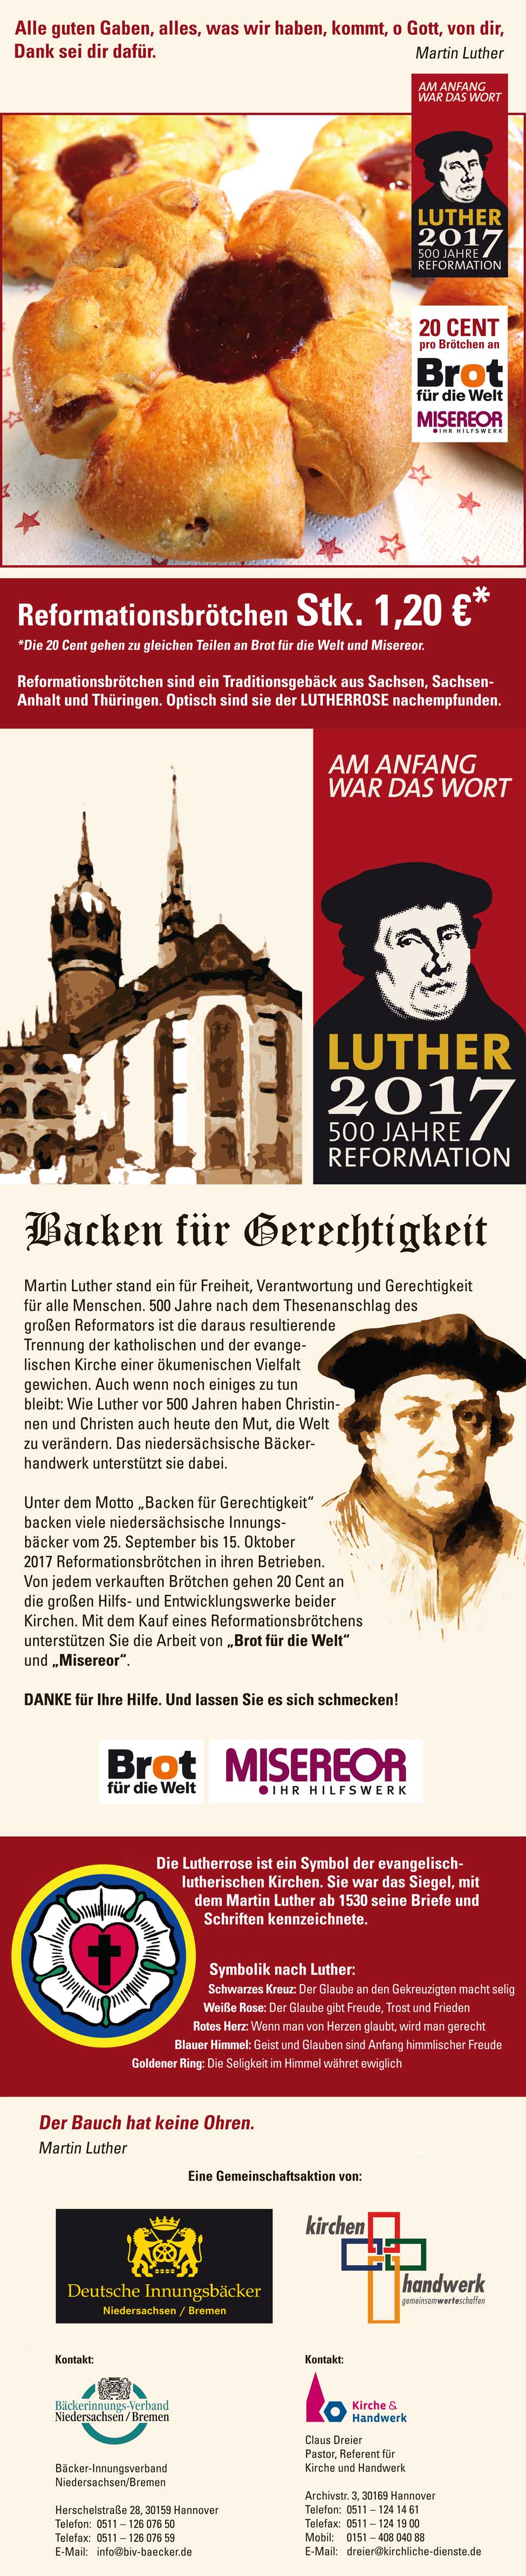 Reformationsbrötchen, Lutherbrötchen, niedersächsische Innungsbäcker, Martin Luther, Suitbertus